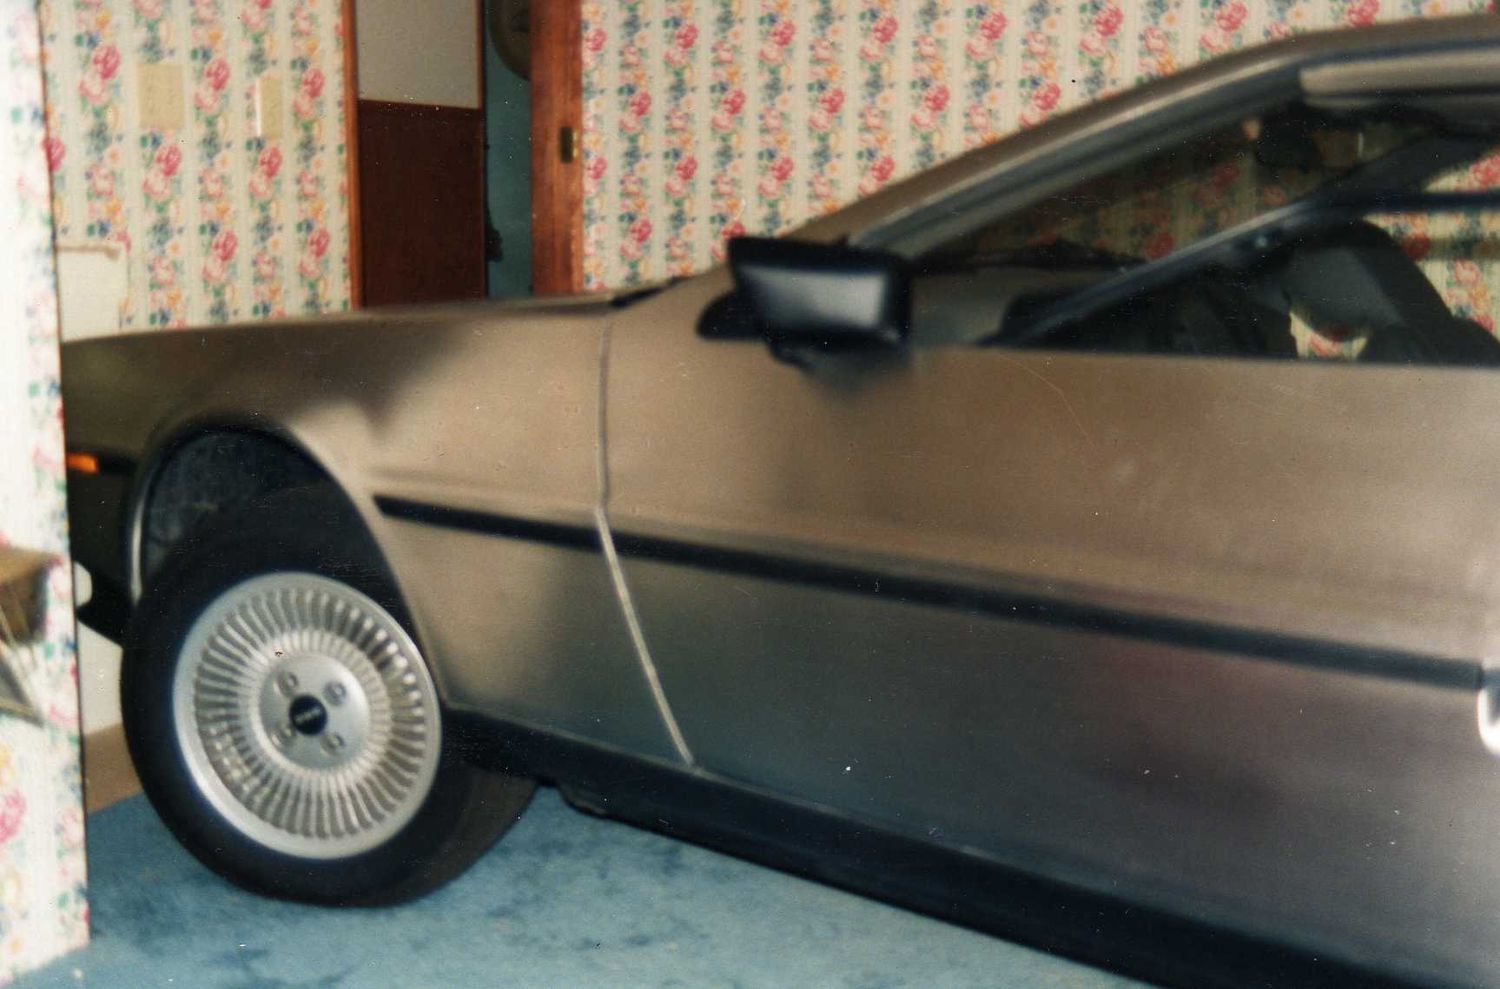 The DeLorean in the bedroom | DeLoreanDirectory.com